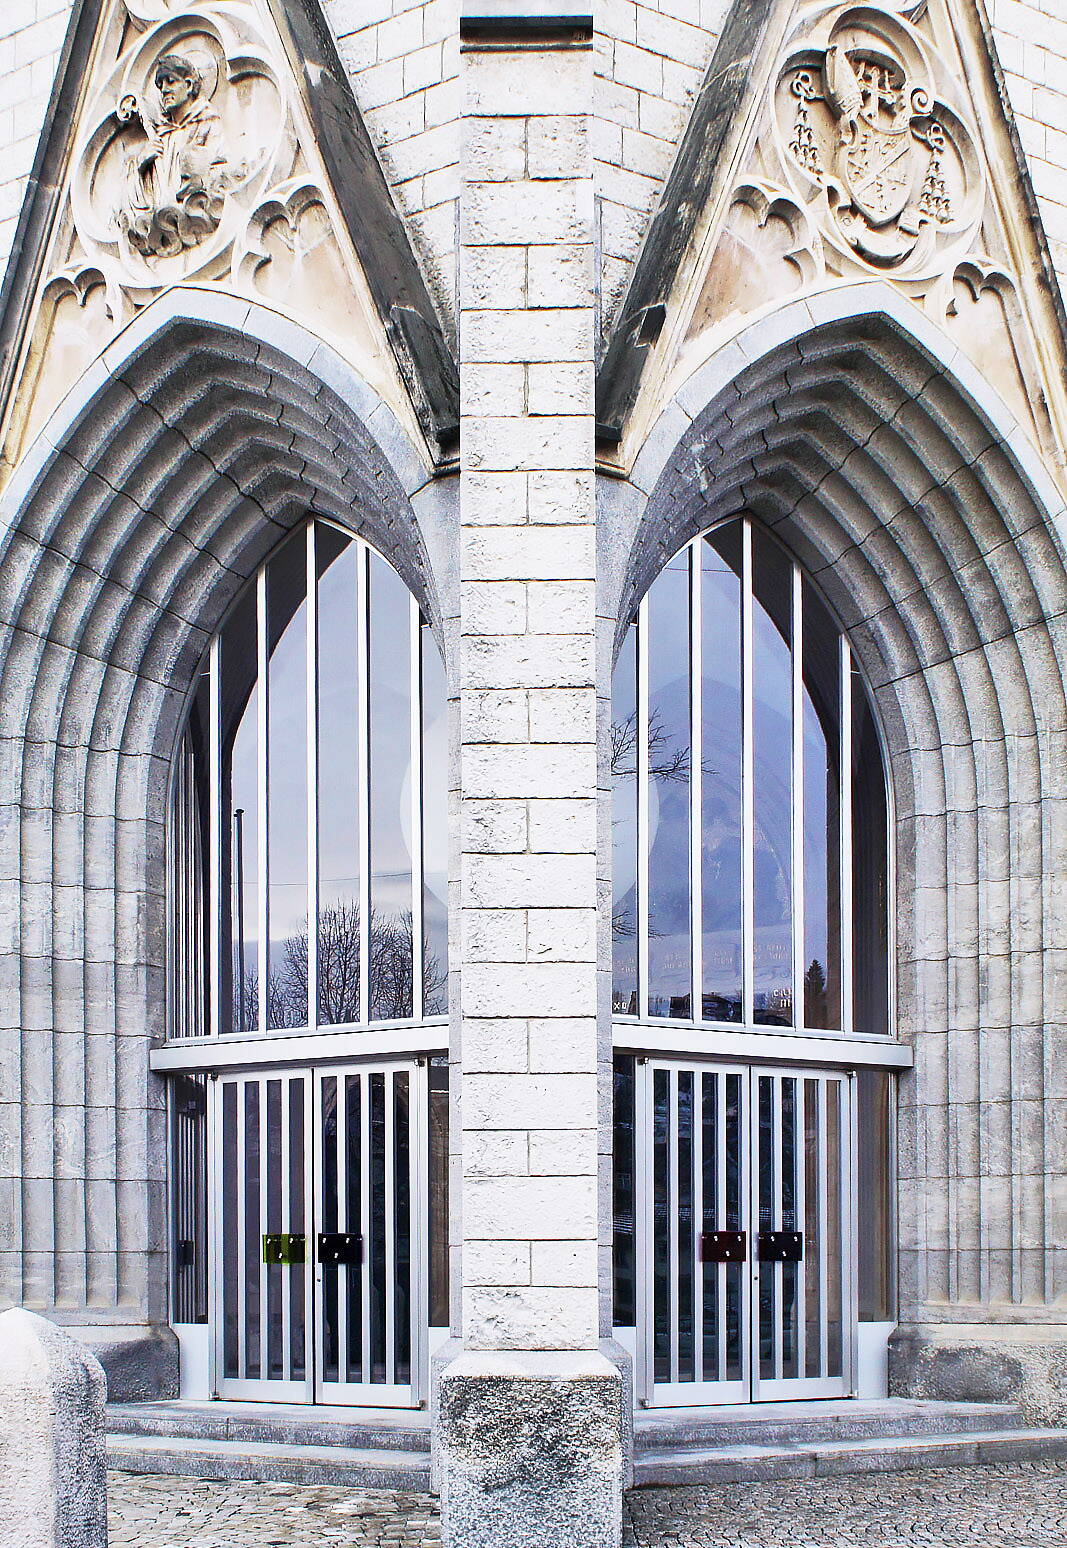 Sicht auf die zwei grossen, spitzzulaufenden Fenster einer Kirche.